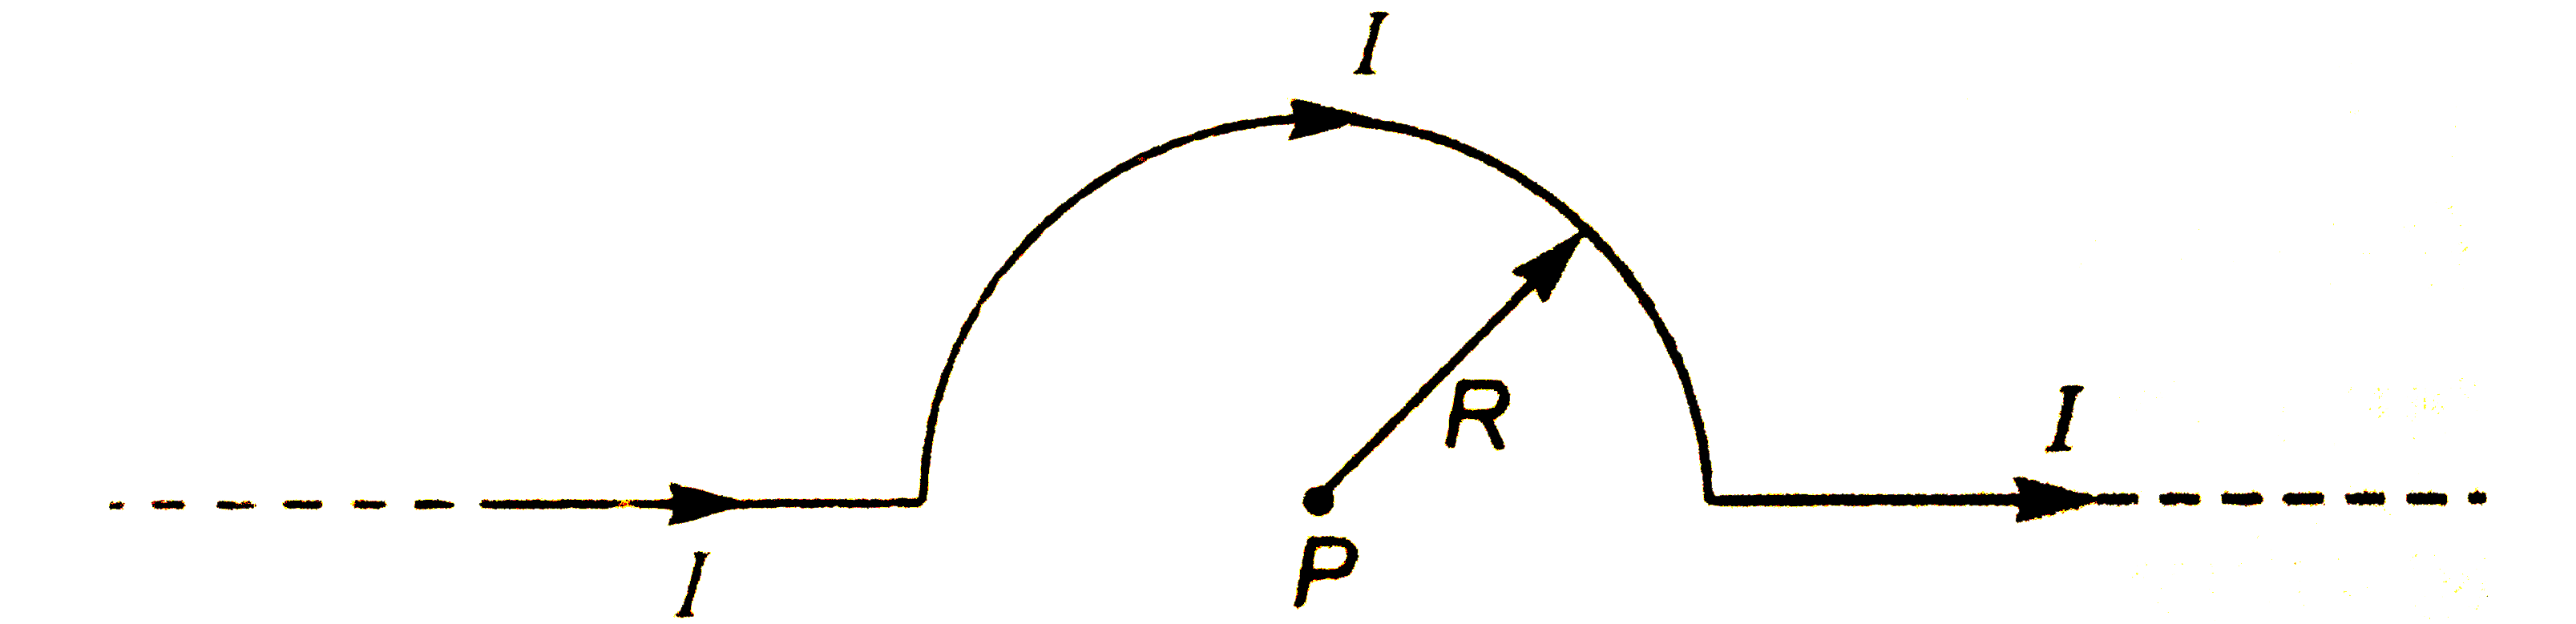 संग्लग्न चित्र में बिंदु P पर चुंबकीय क्षेत्र ज्ञात कीजिये।